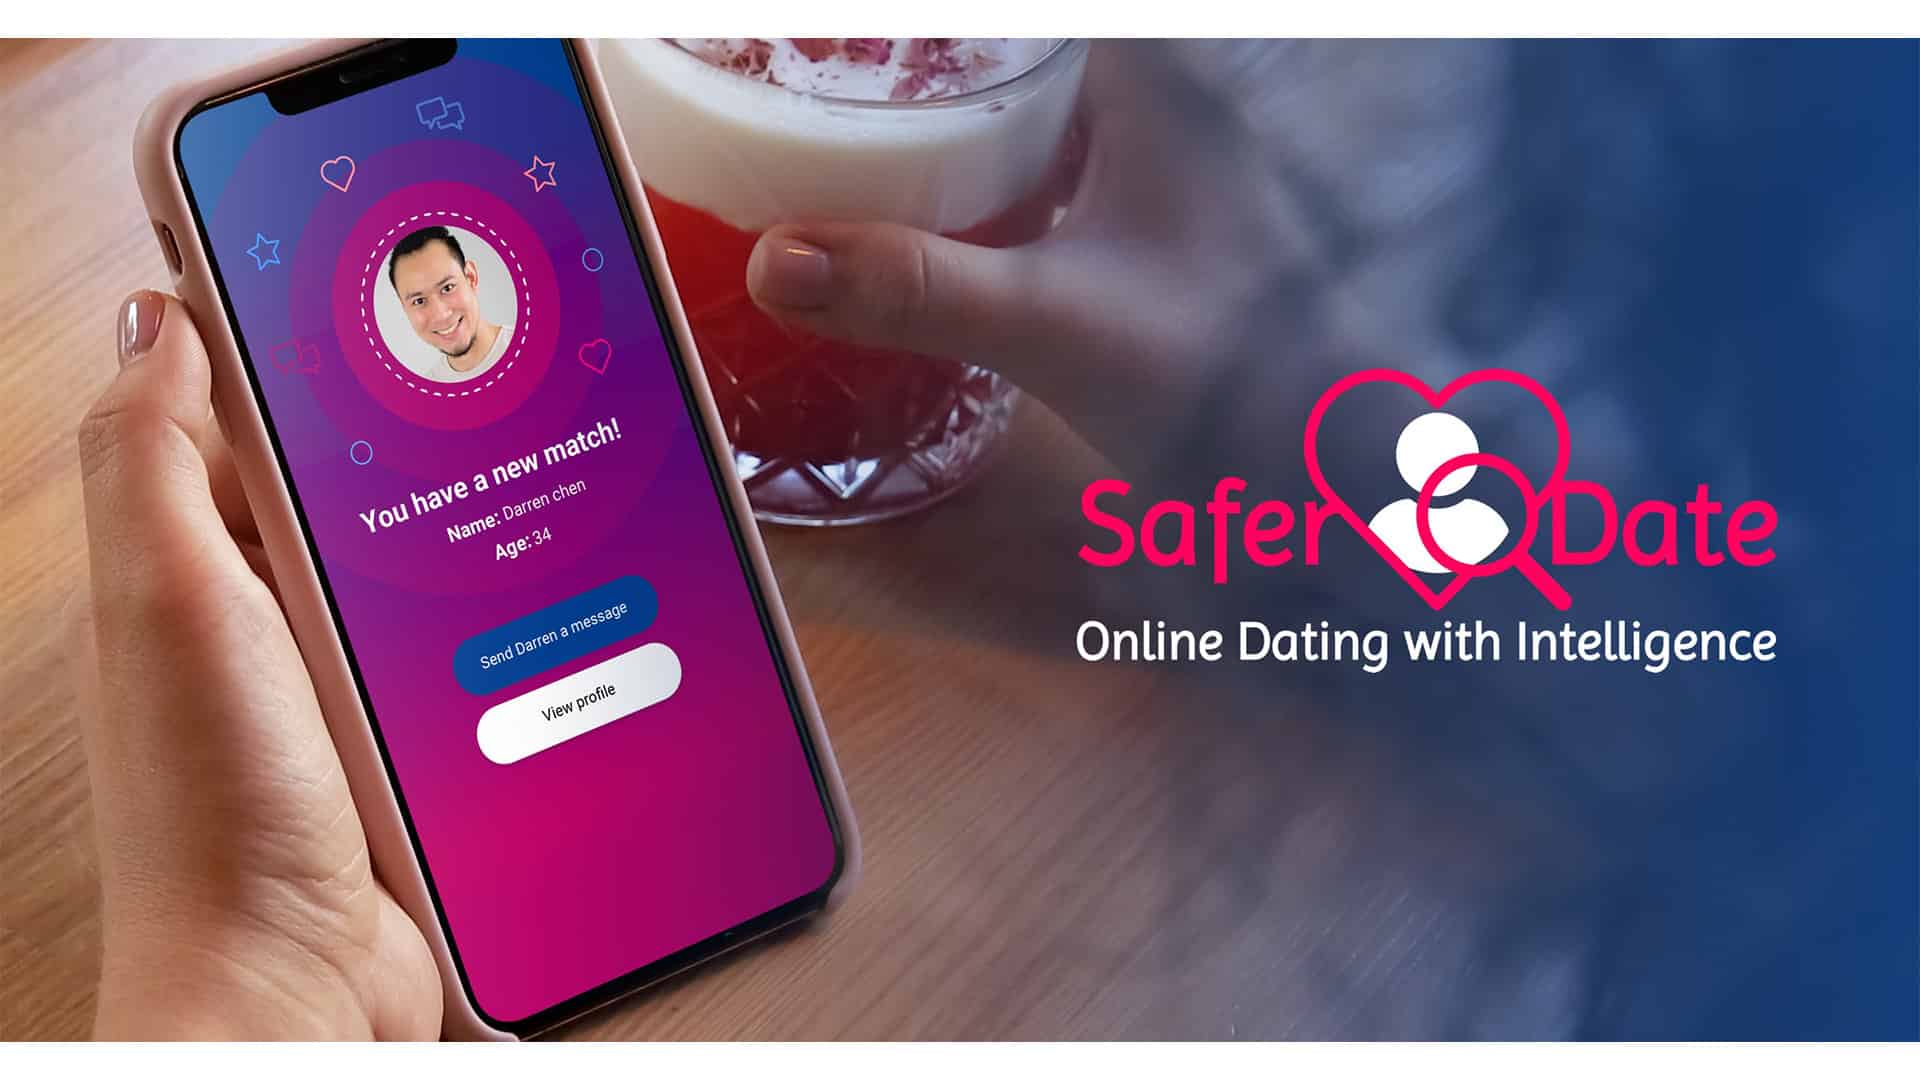 Safer Date